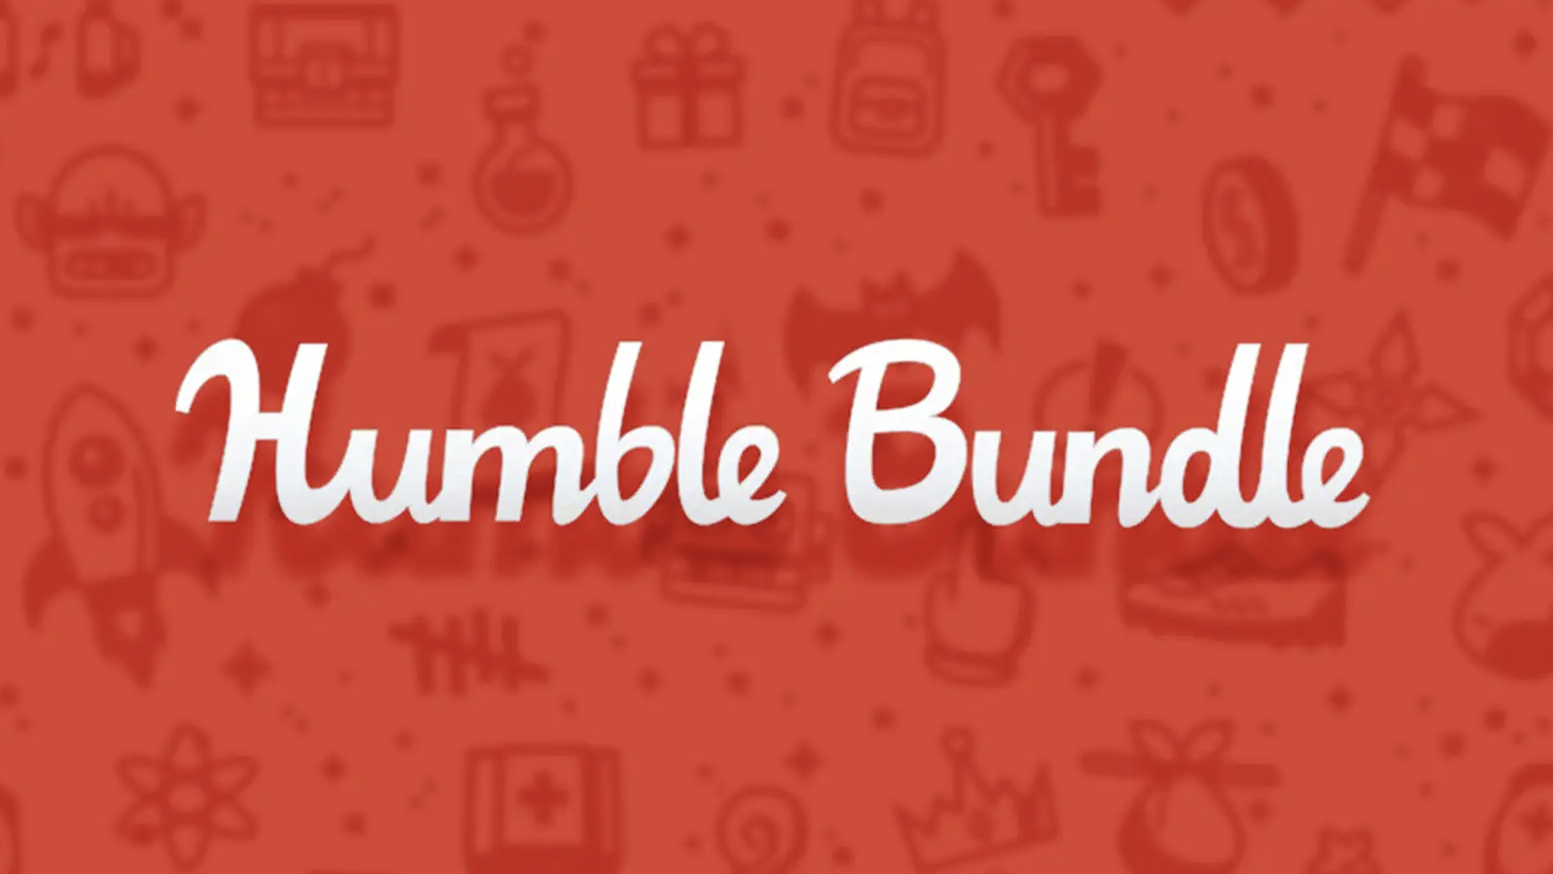 Image: Humble Bundle